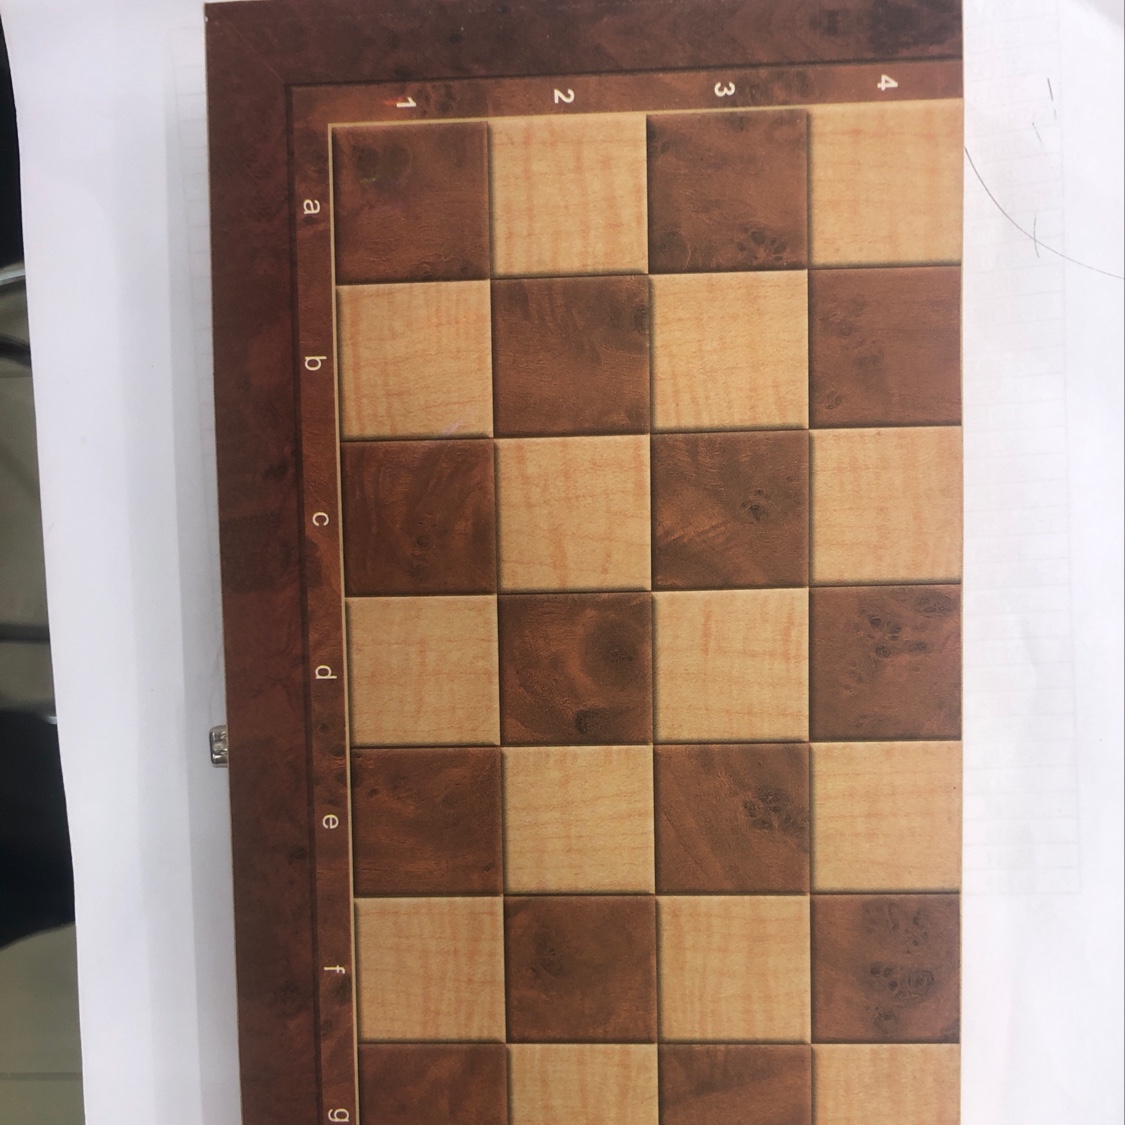 国际象棋1国际象棋1国际象棋1国际象棋1详情图1